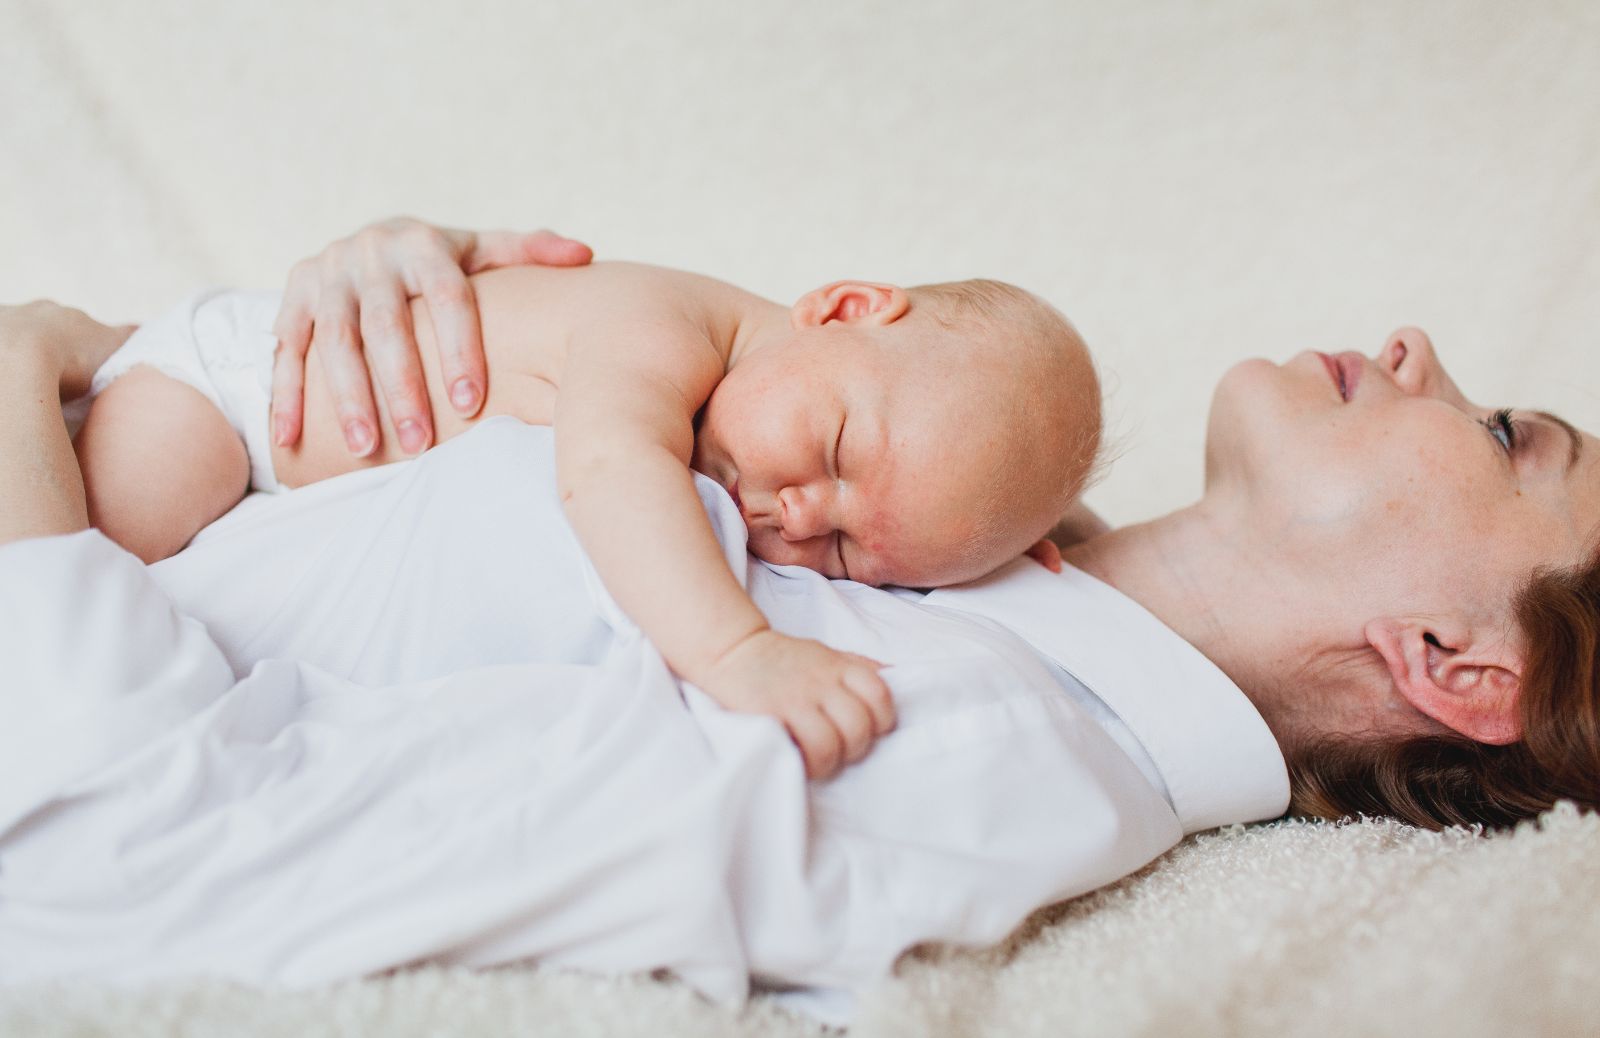 Fecondazione assistita e rischi per i nascituri, una nuova ricerca